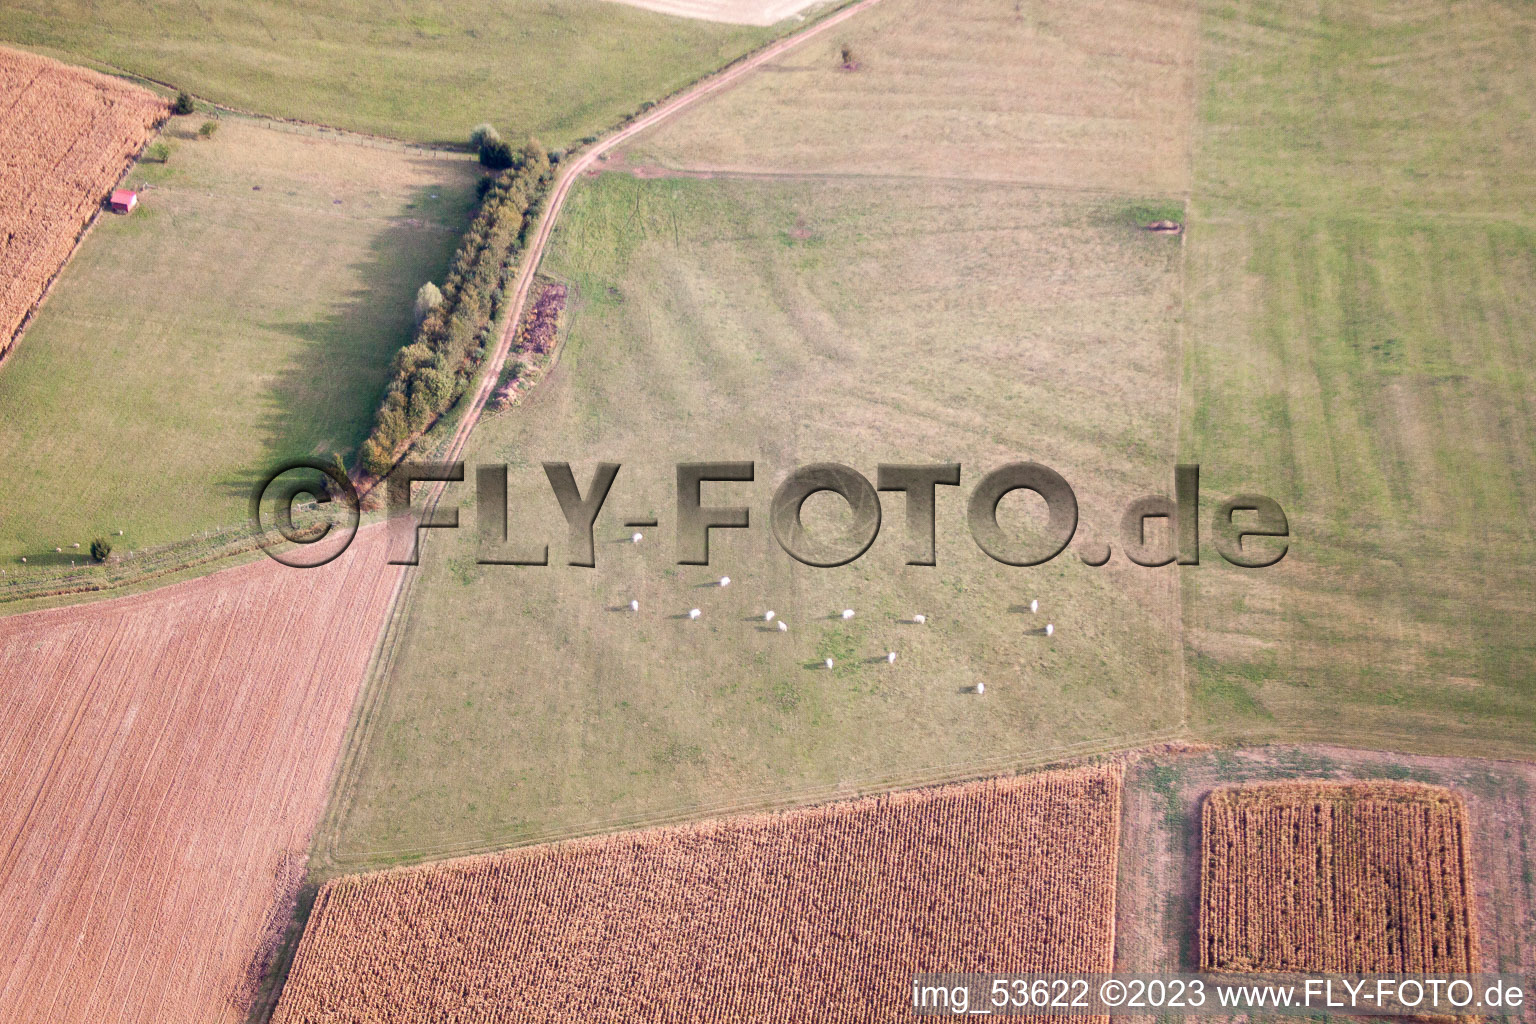 Uhrwiller im Bundesland Bas-Rhin, Frankreich aus der Luft betrachtet